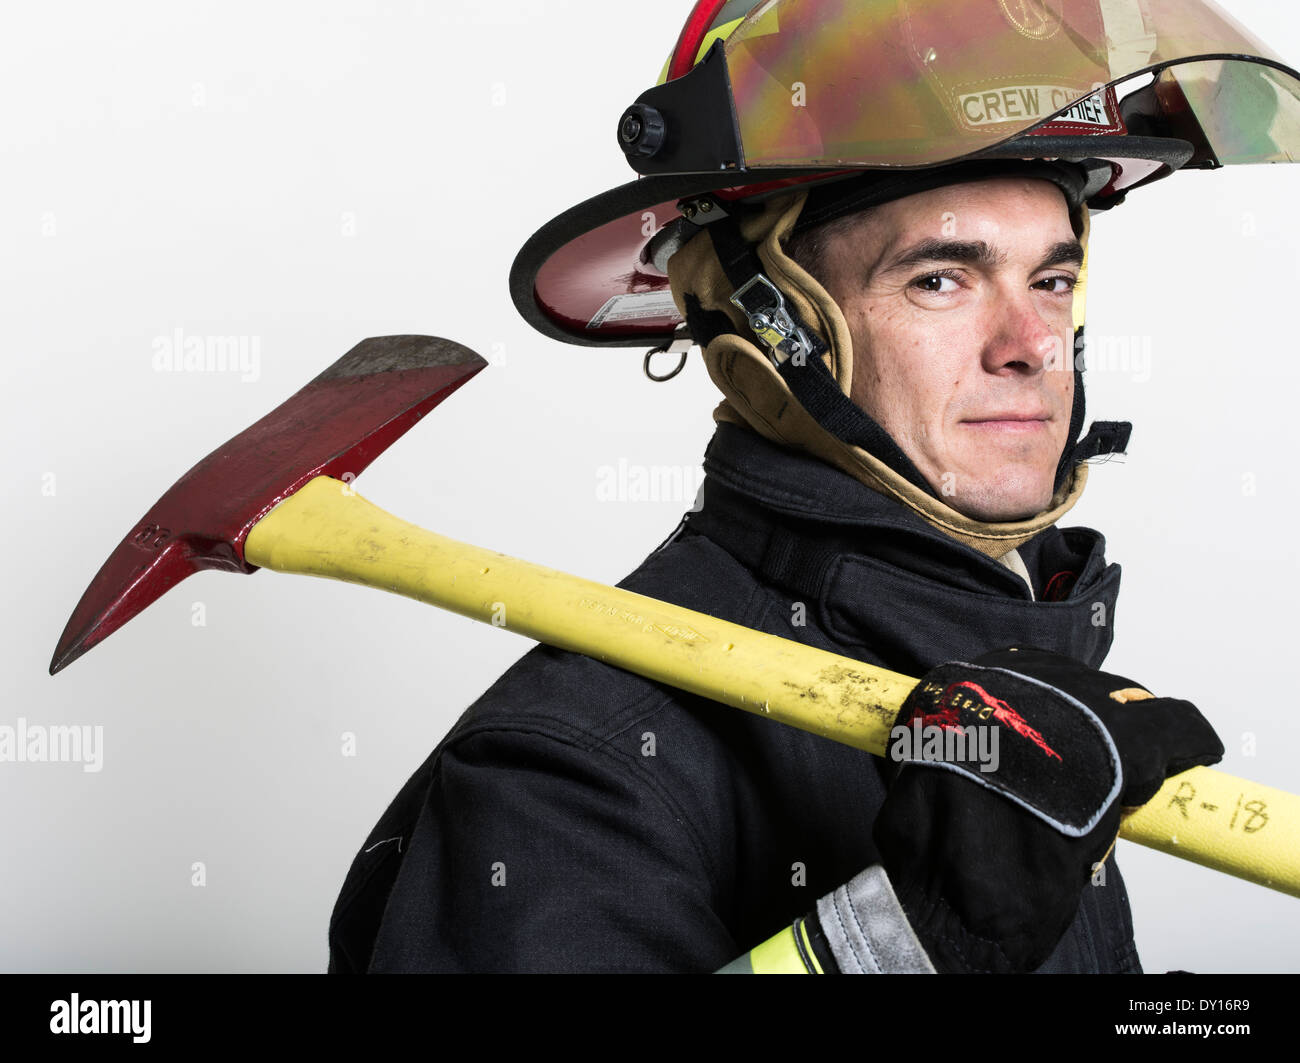 Männlichen Feuerwehrmann in uniform mit Atmung Apparat und Axt strukturelle Brandbekämpfung Stockfoto